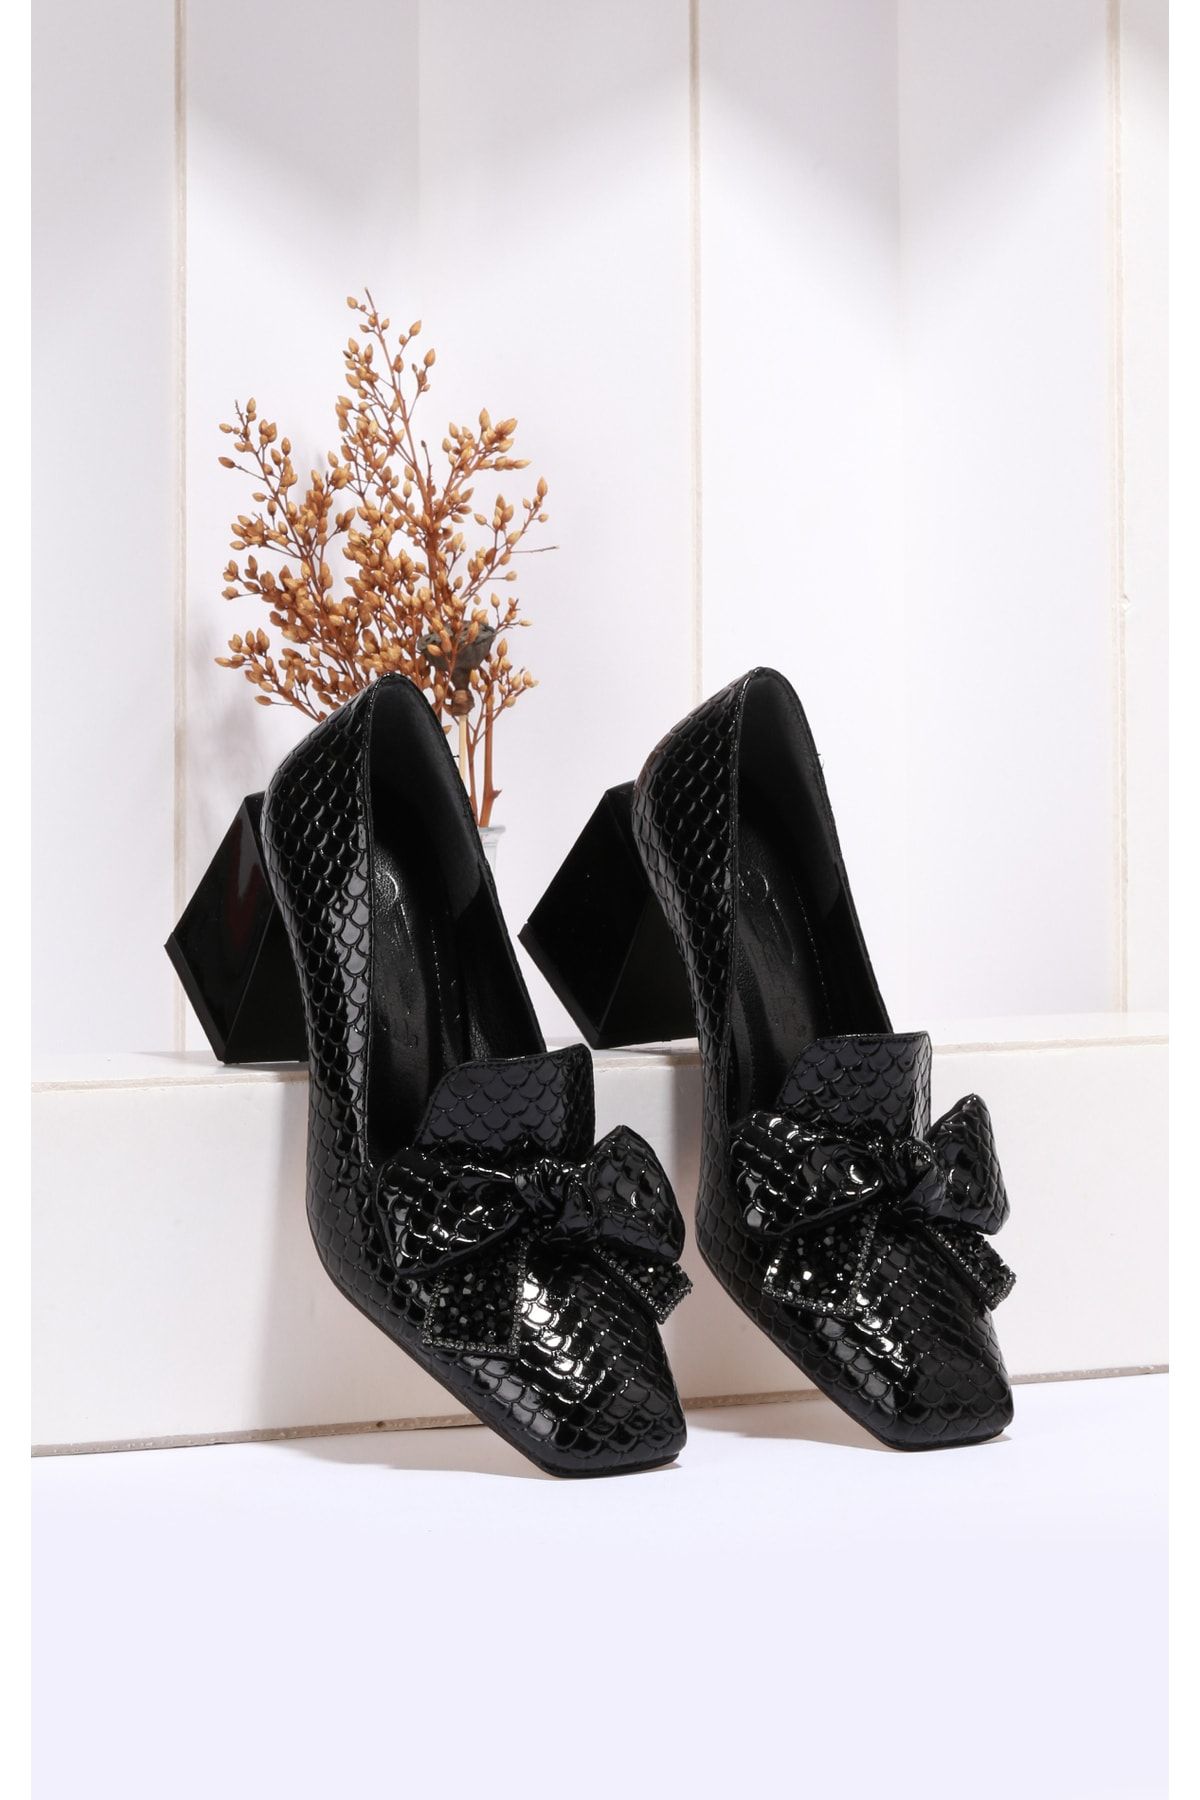 TREND Siyah Kalın Topuklu Timsah Desenli Ayakkabı 7 CM Z0702-1